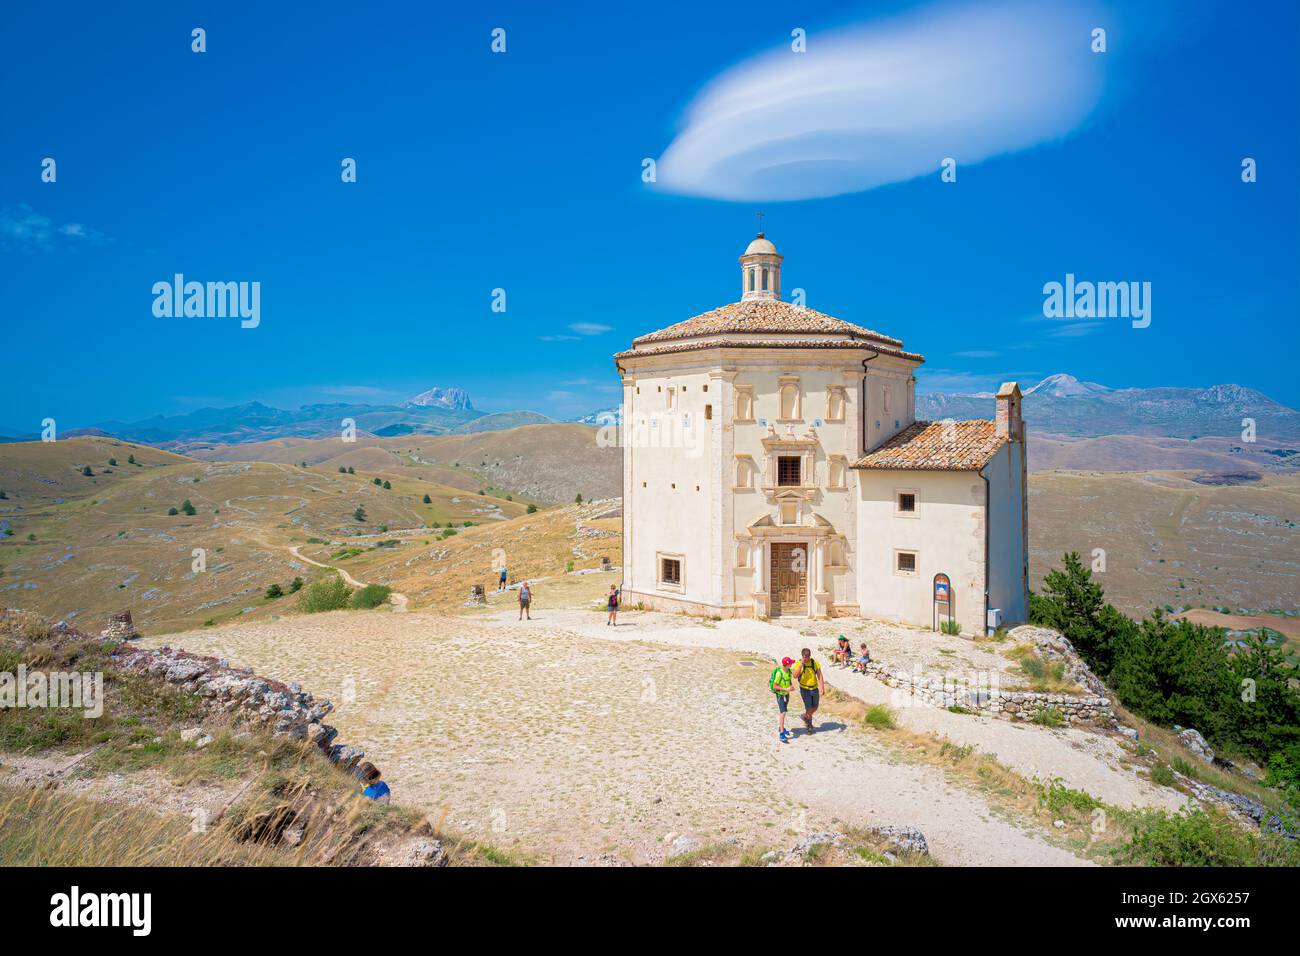 Chiesa di Santa Maria della Pieta nei pressi del castello di Rocca Calascio, Abruzzo Foto Stock